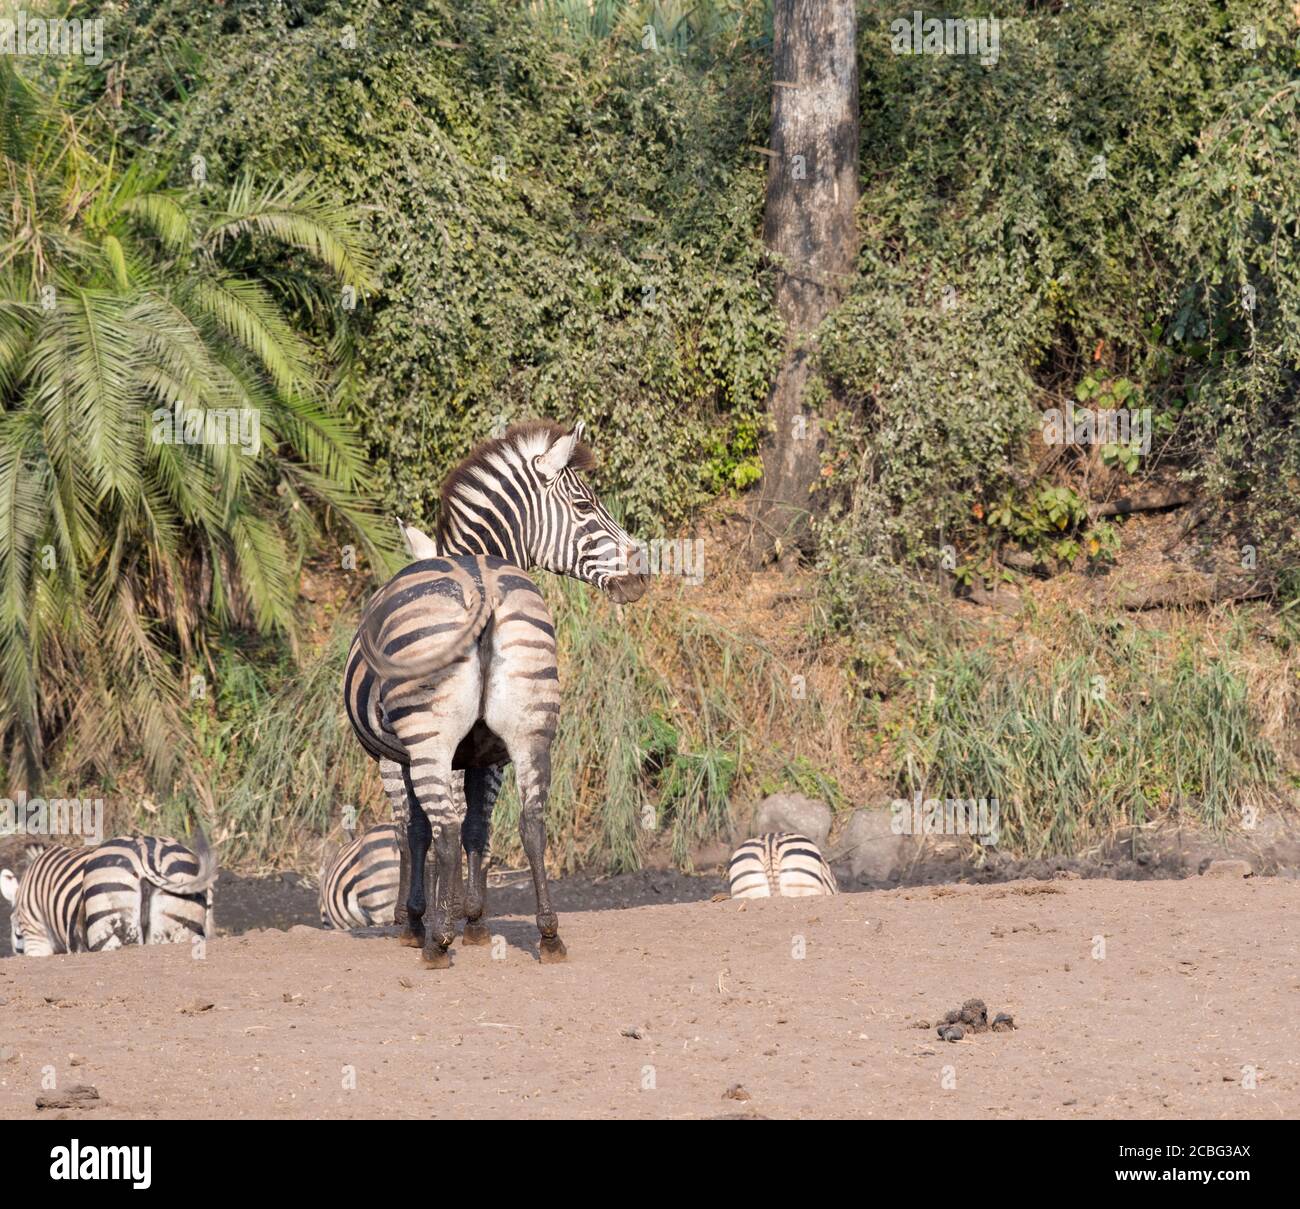 Zebra am schlammigen Wasserloch mit grünen Flusspflanzen und einer zebra steht starrend und stellt sicher, dass keine Gefahr näher kommt Stockfoto